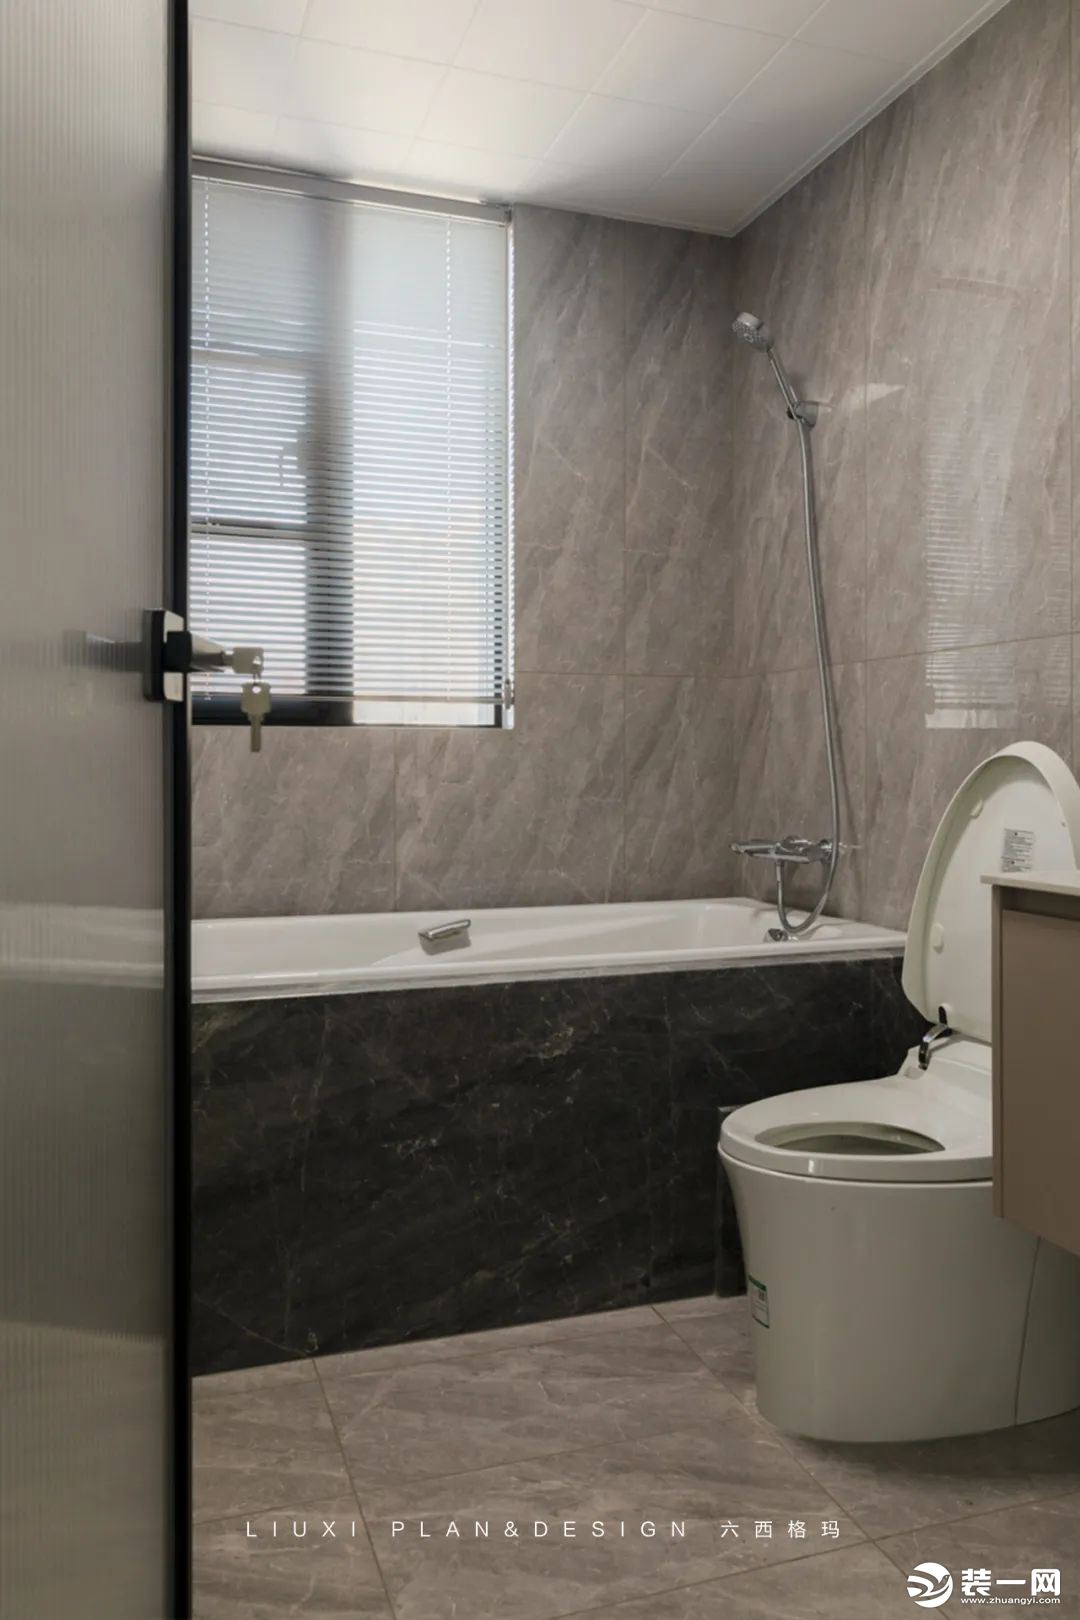 卫生间灰色系瓷砖延展空间，内敛质感十足。悬空浴室柜设计，便于日常清洁卫生。 现场砖砌浴缸经济实用，阳